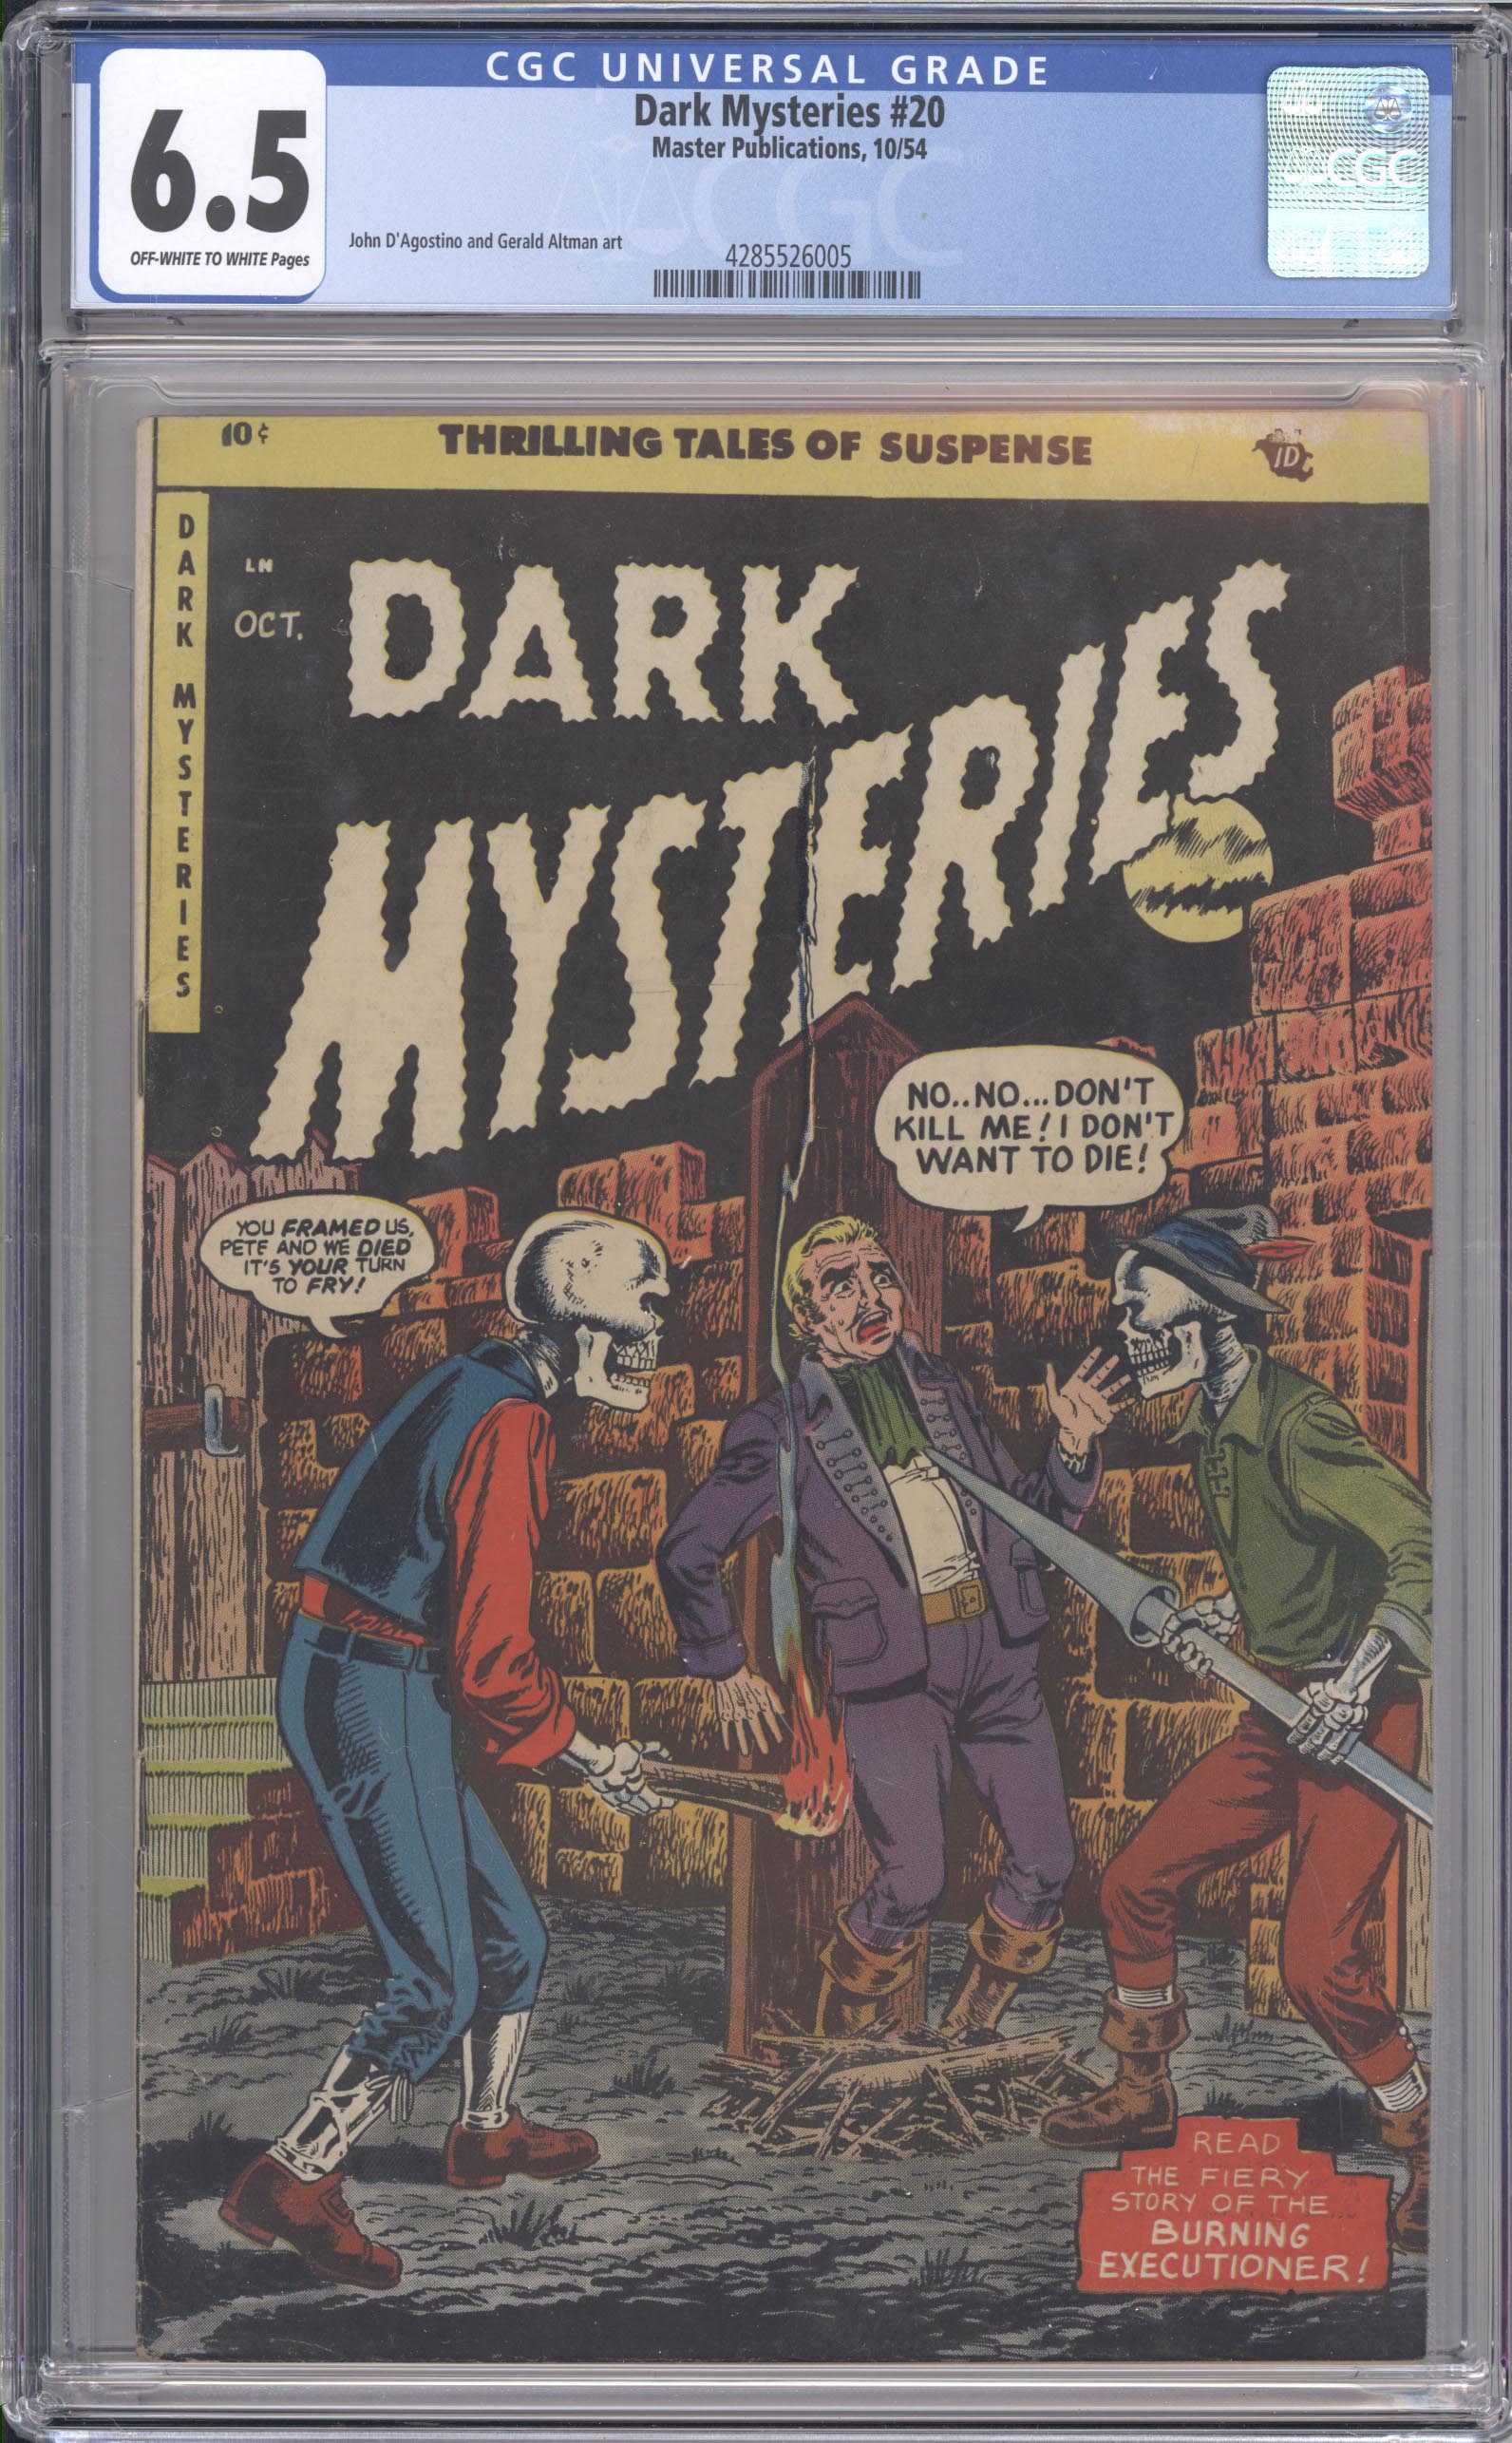 Dark Mysteries #20 front